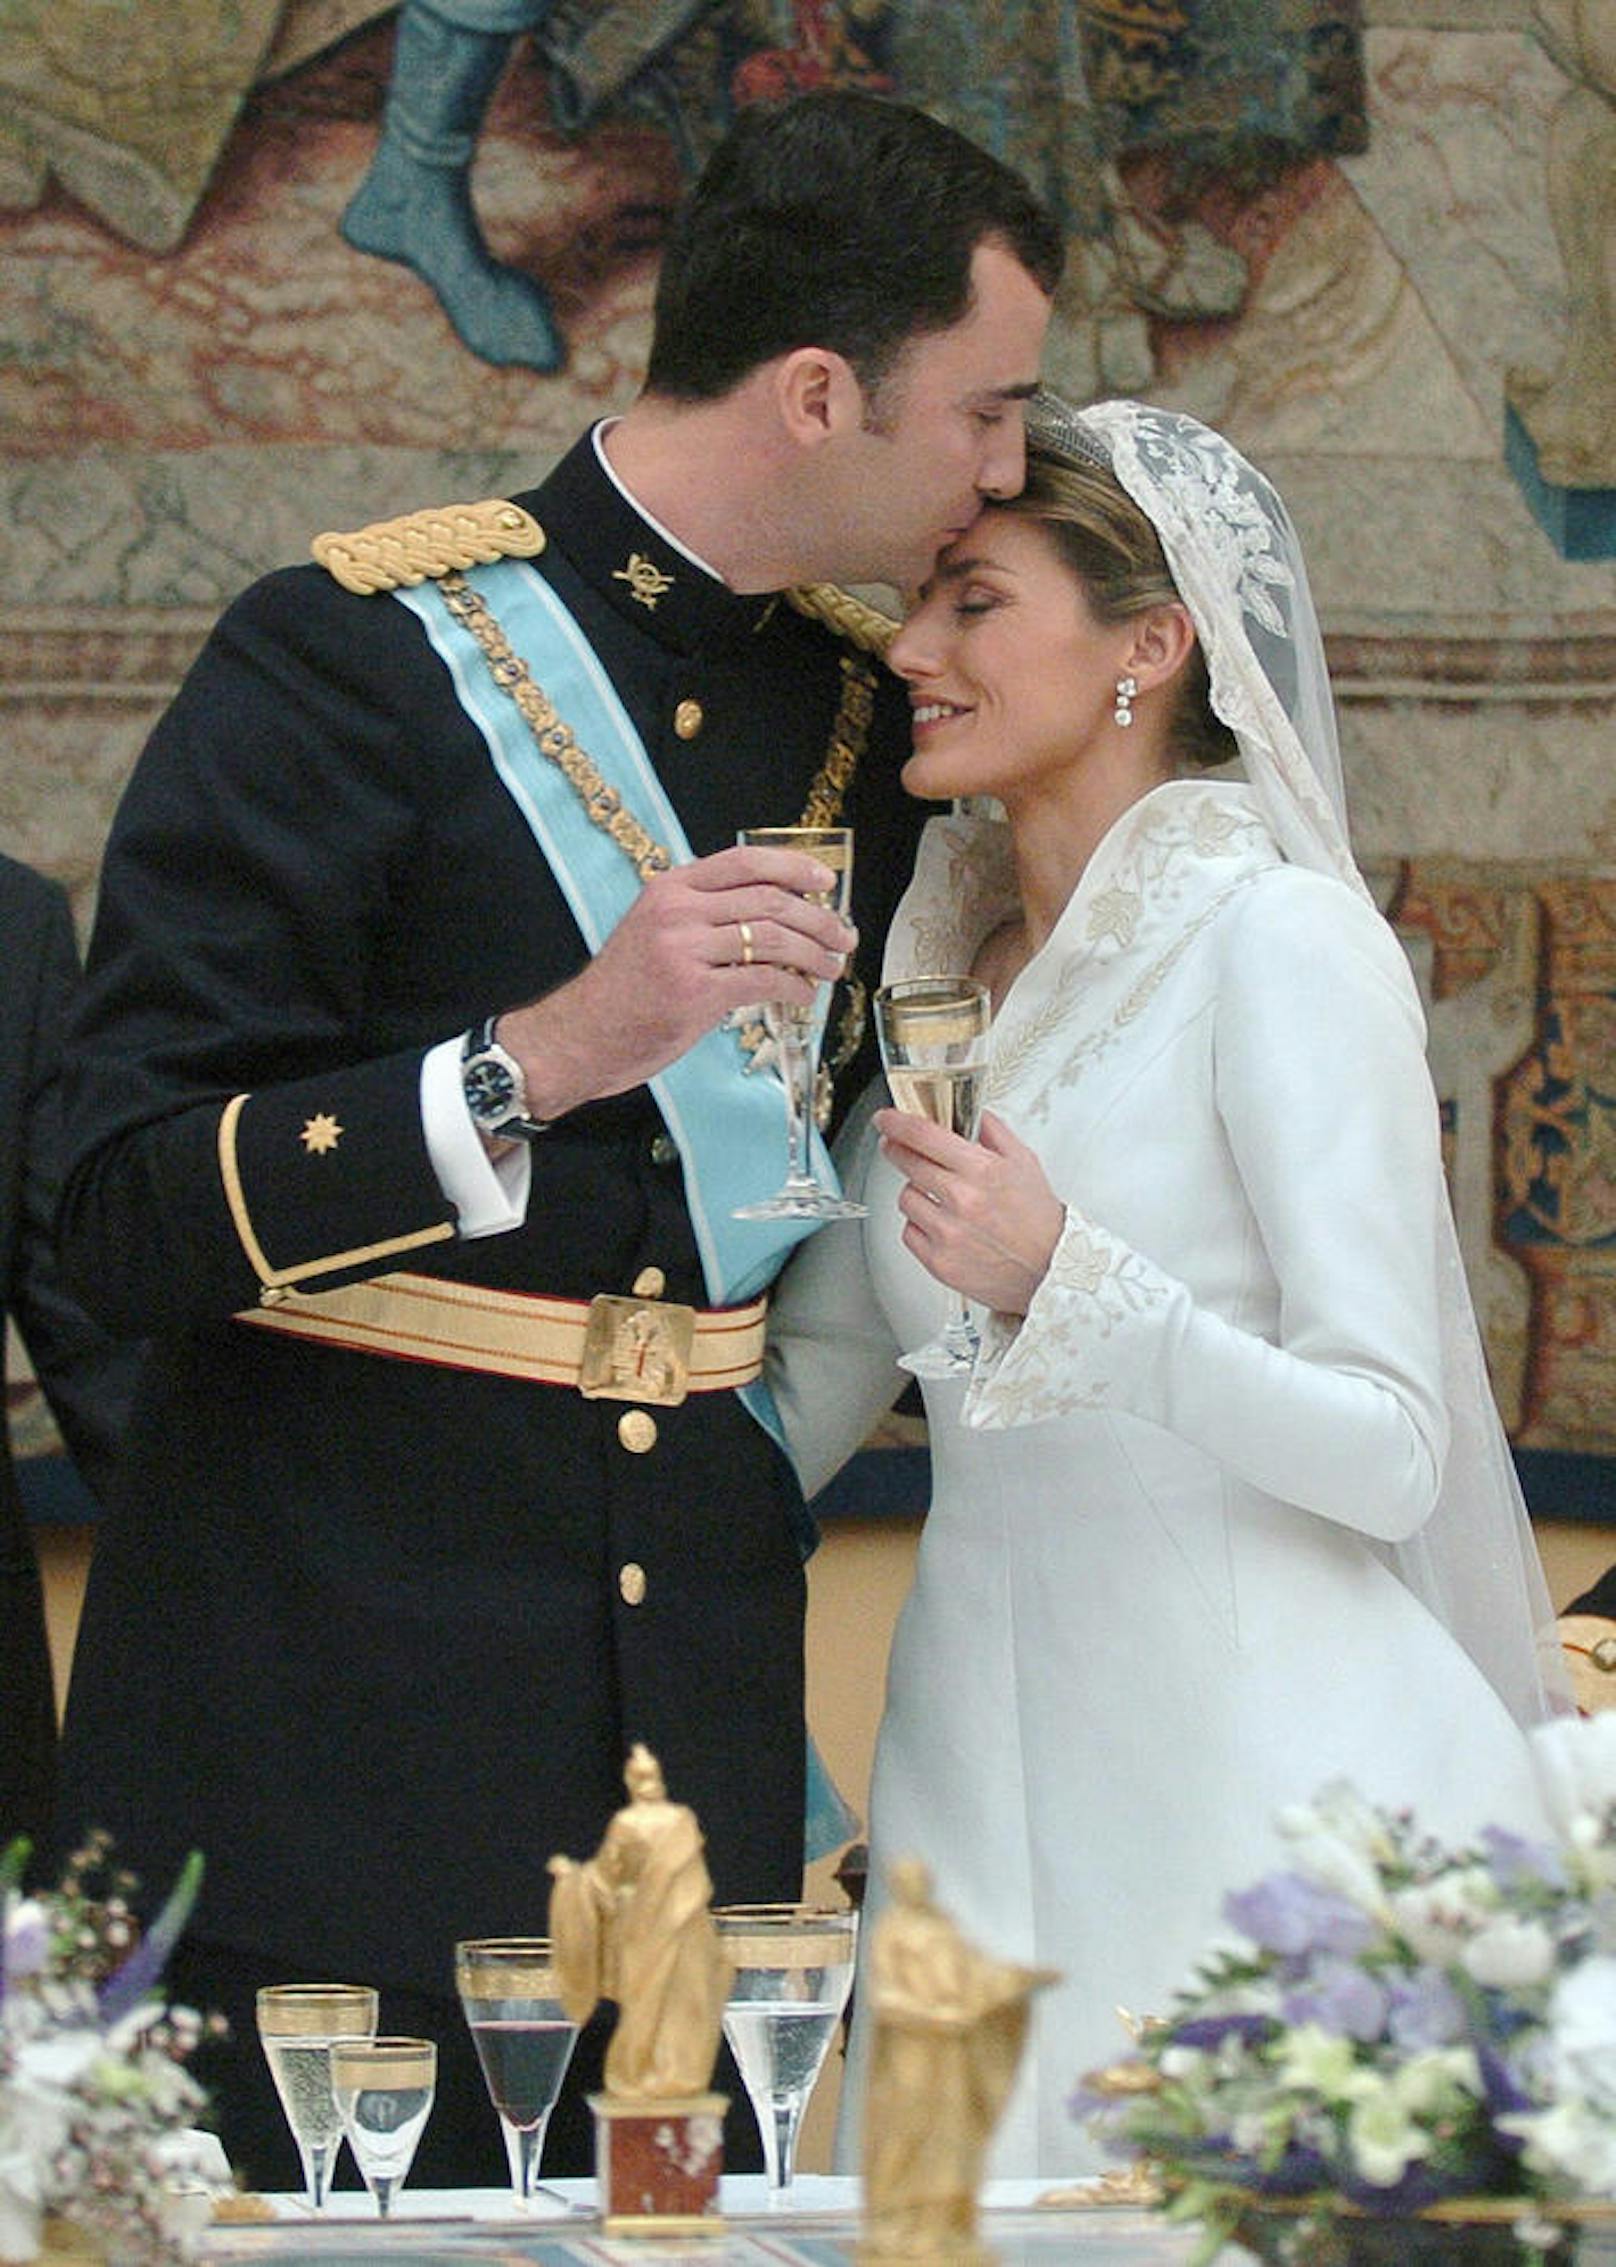 Die Hochzeit von Felipe und Letizia.